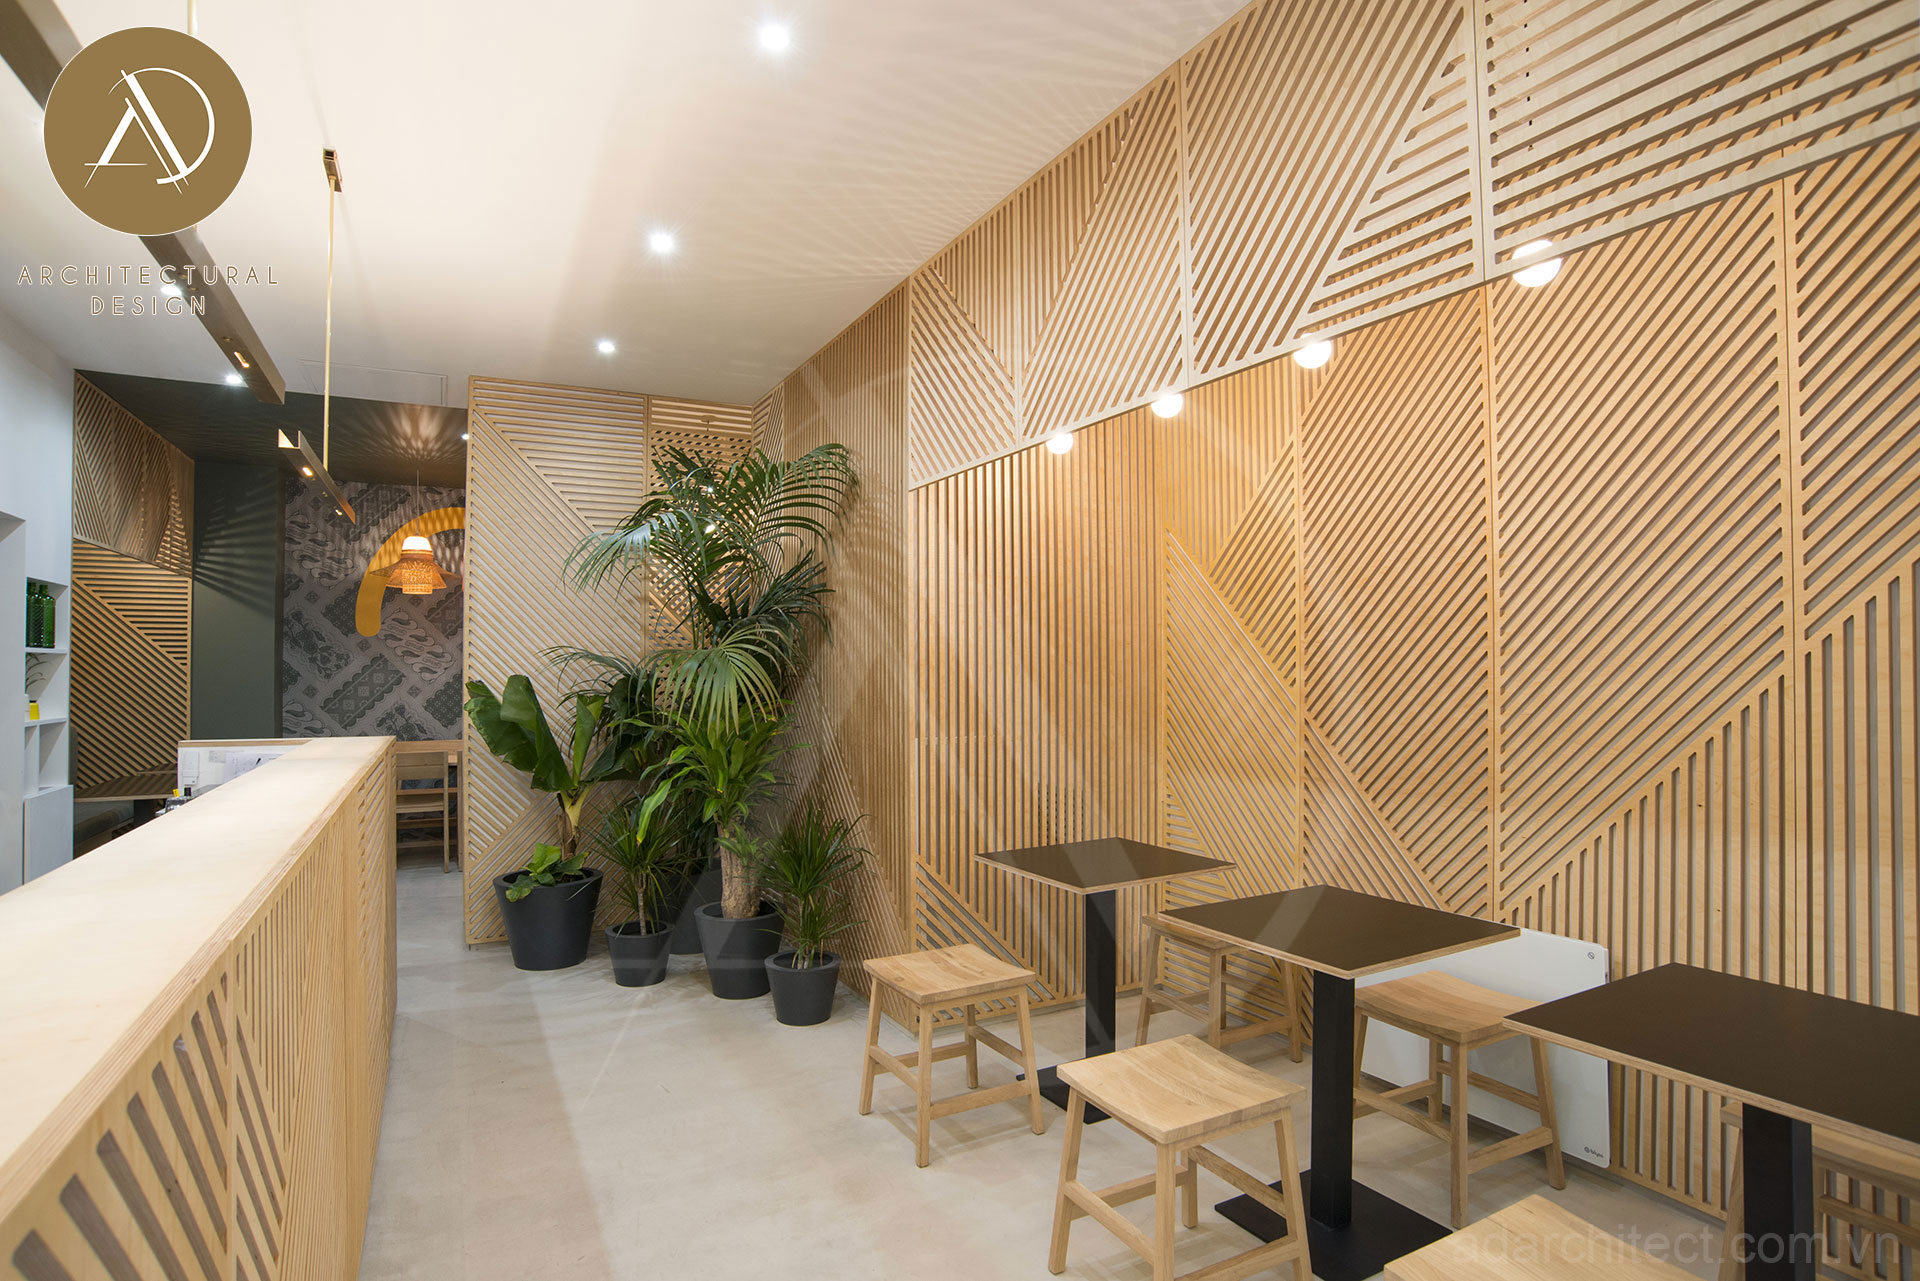 thiết kế quán ăn: bố trí cây xanh giúp tăng sinh khí cho quán ăn 